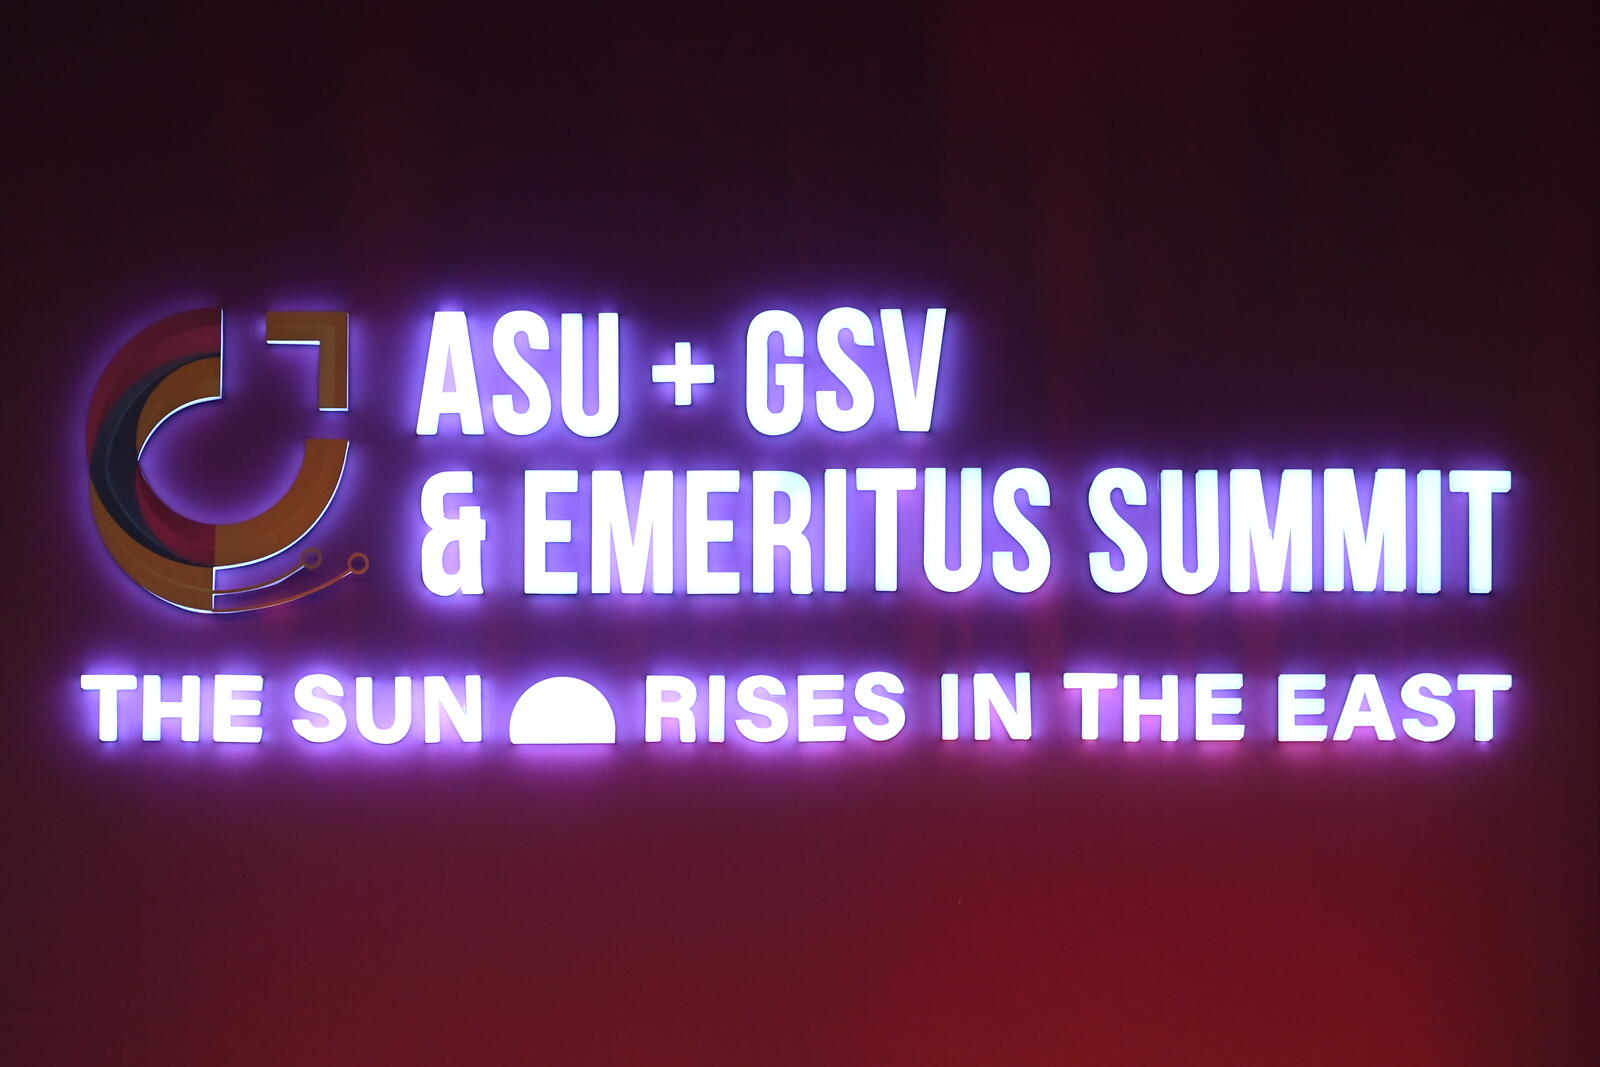 ASU+GSV India